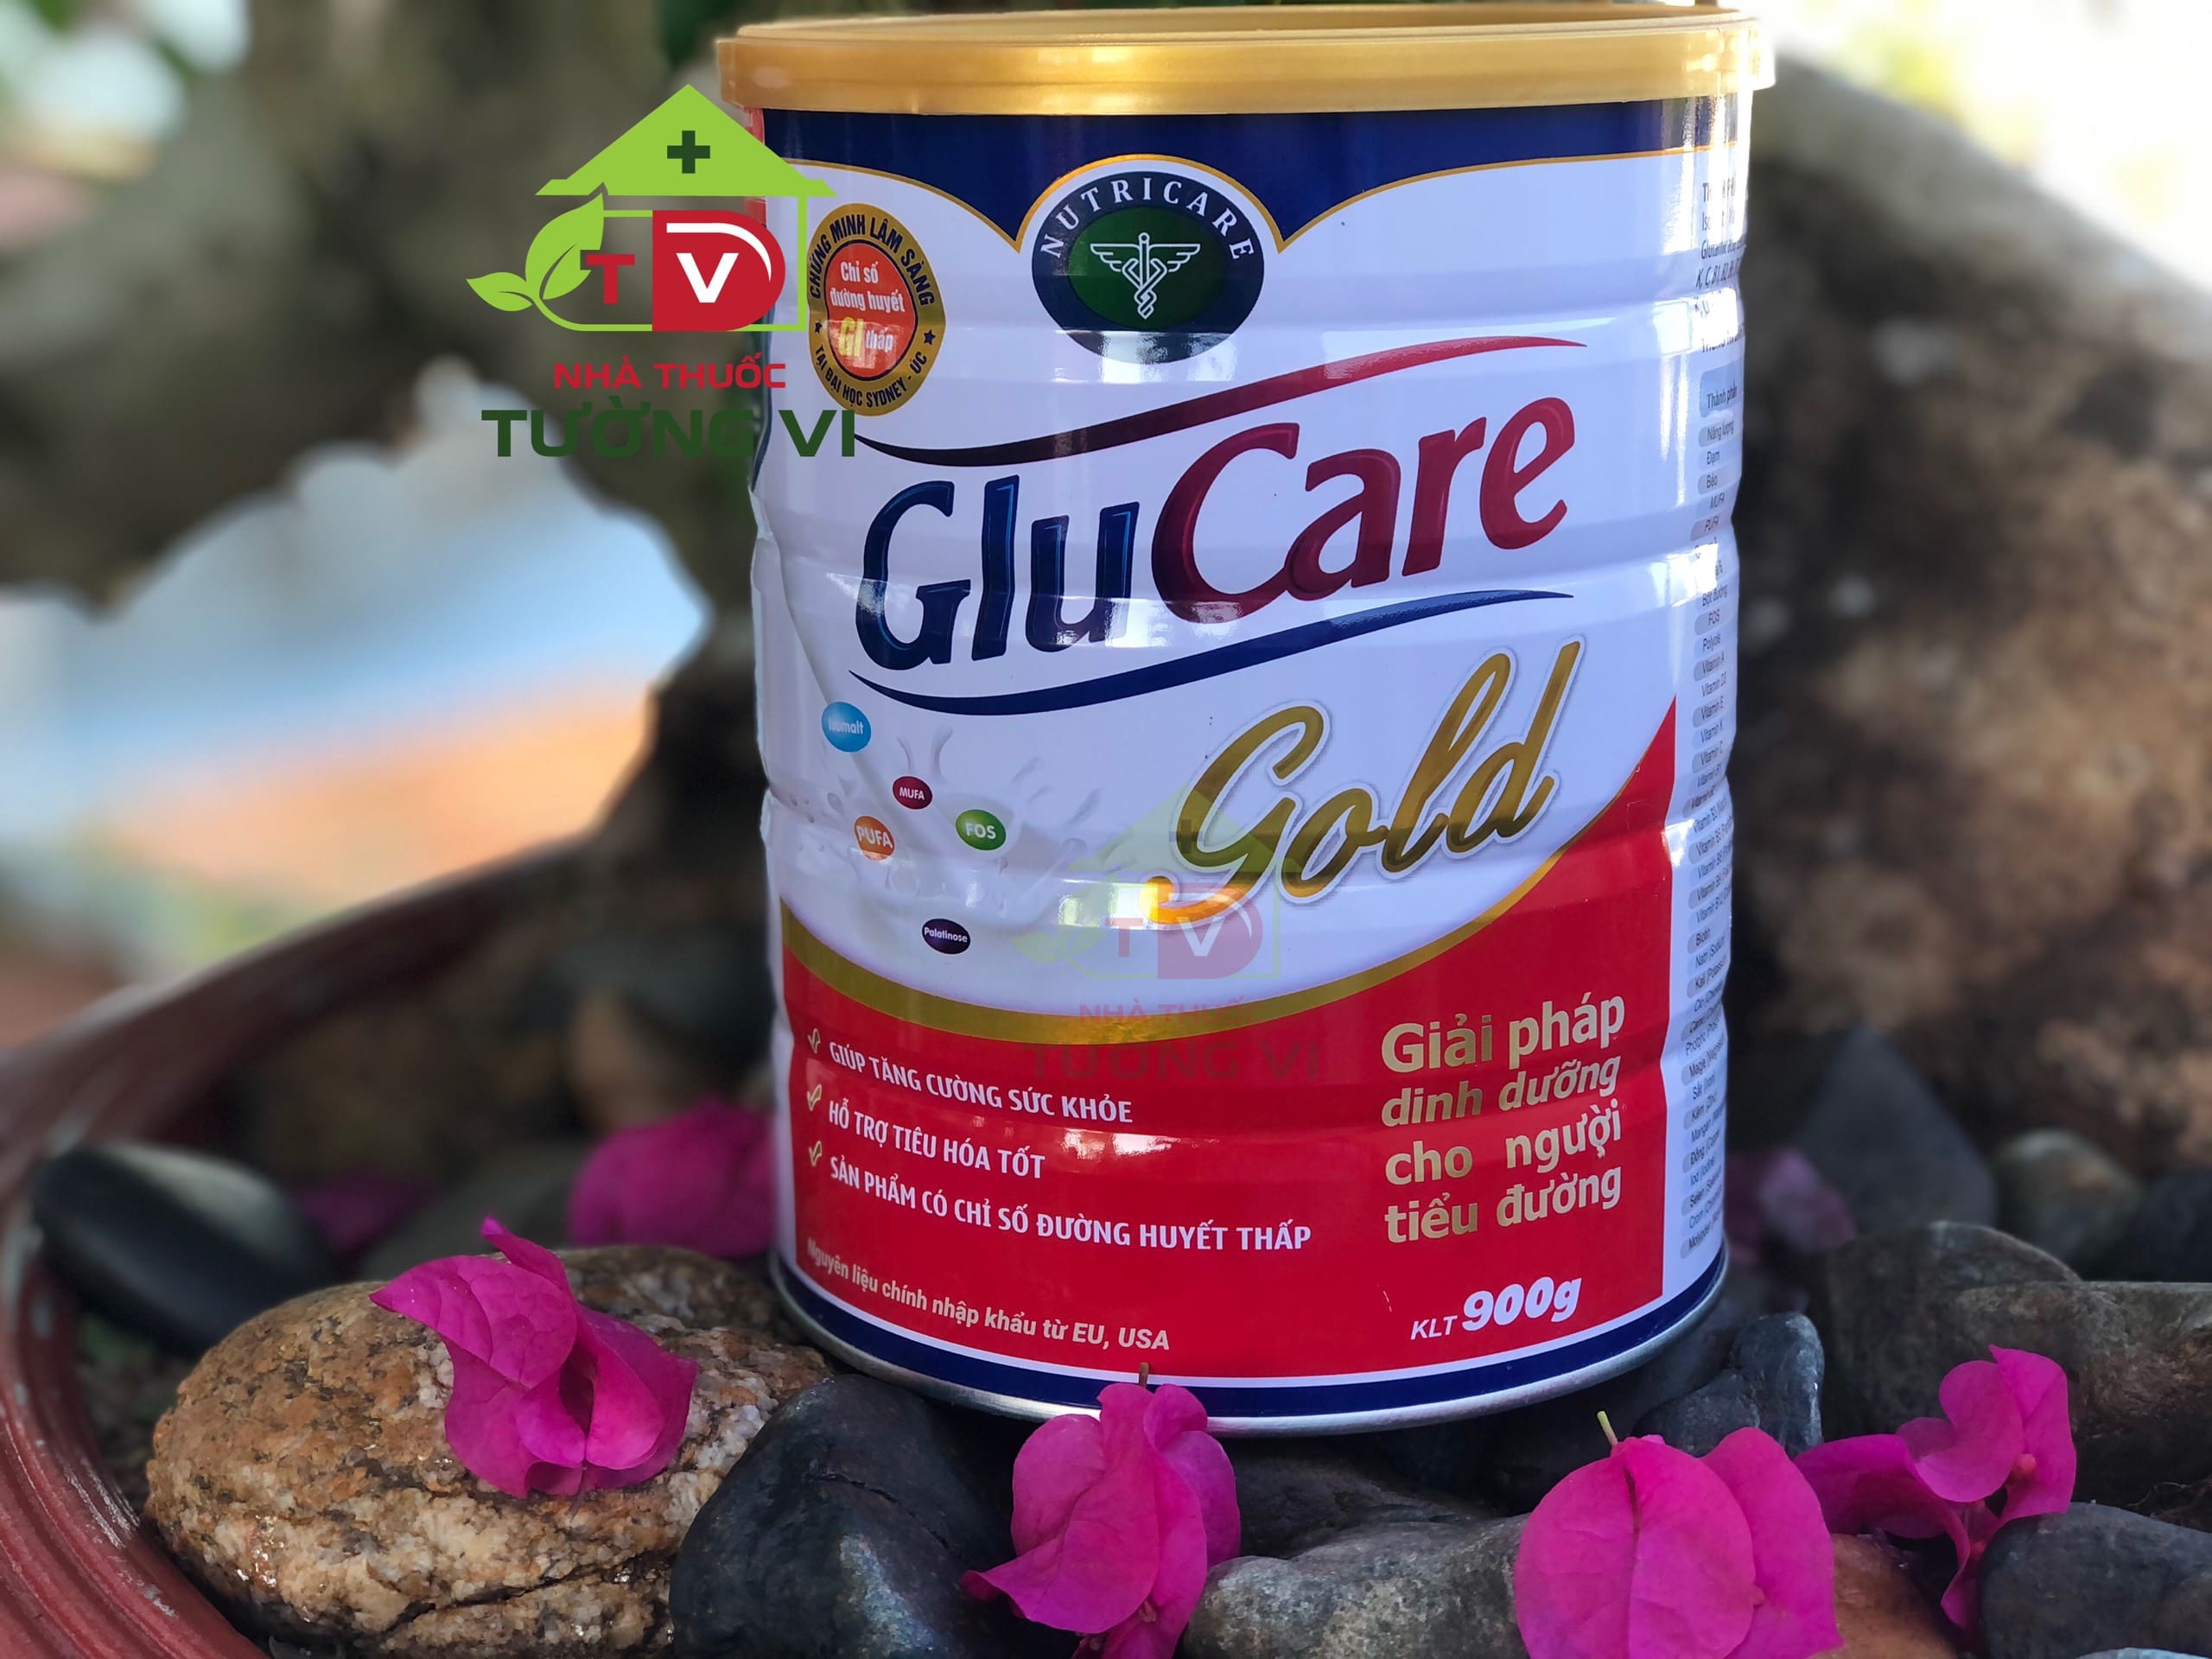 Sữa Glucare Gold - Giải pháp dinh dưỡng dành cho người tiểu đường